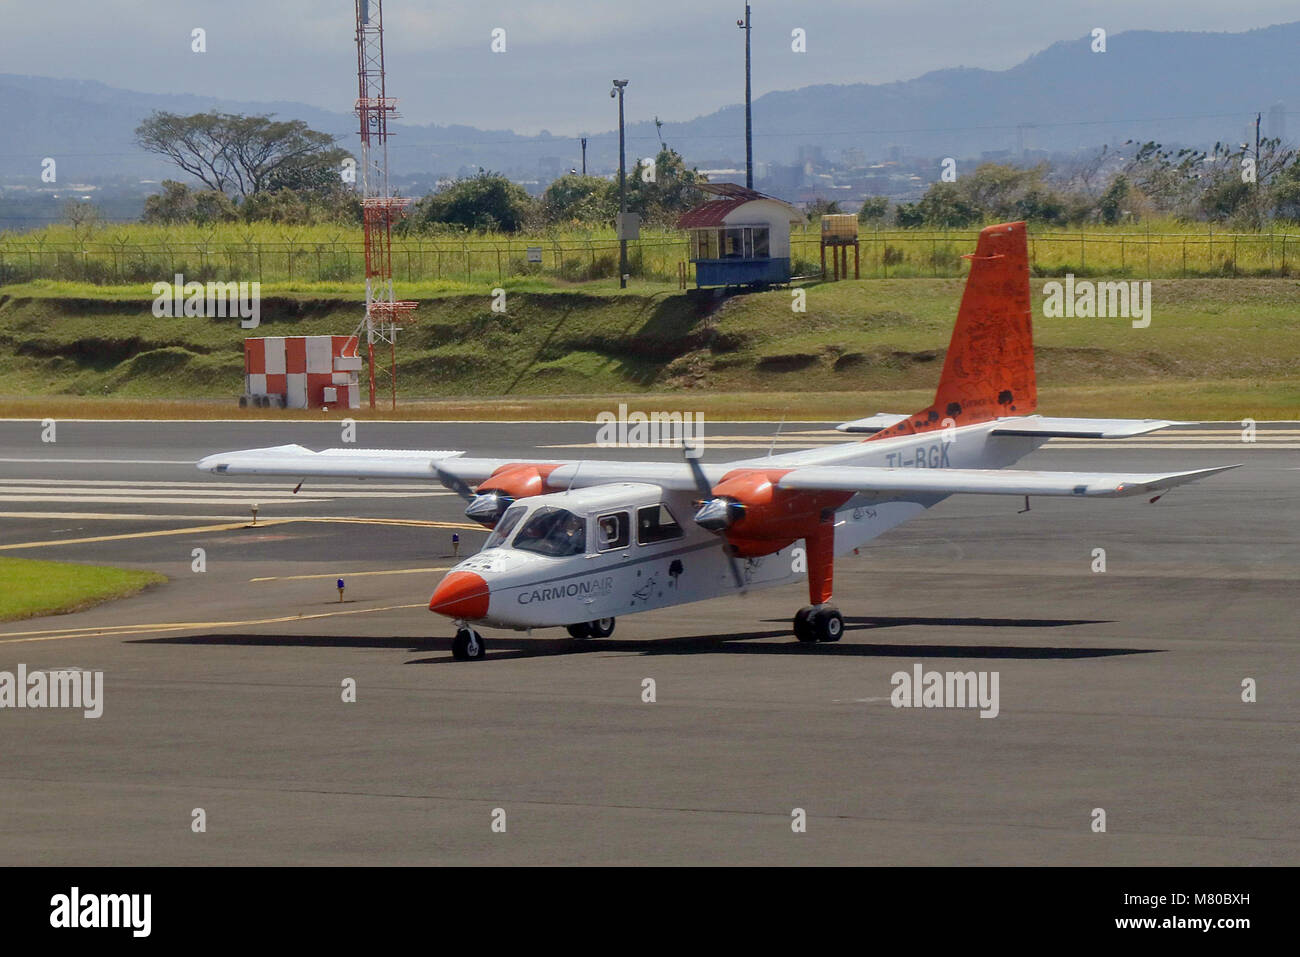 Carmonair aeromobili leggeri ottiene un pneumatico sgonfio come esso sta per prendere il via a San Jose Juan Santamaria Airport in Costa Rica facendolo per interrompere il decollo. Foto Stock